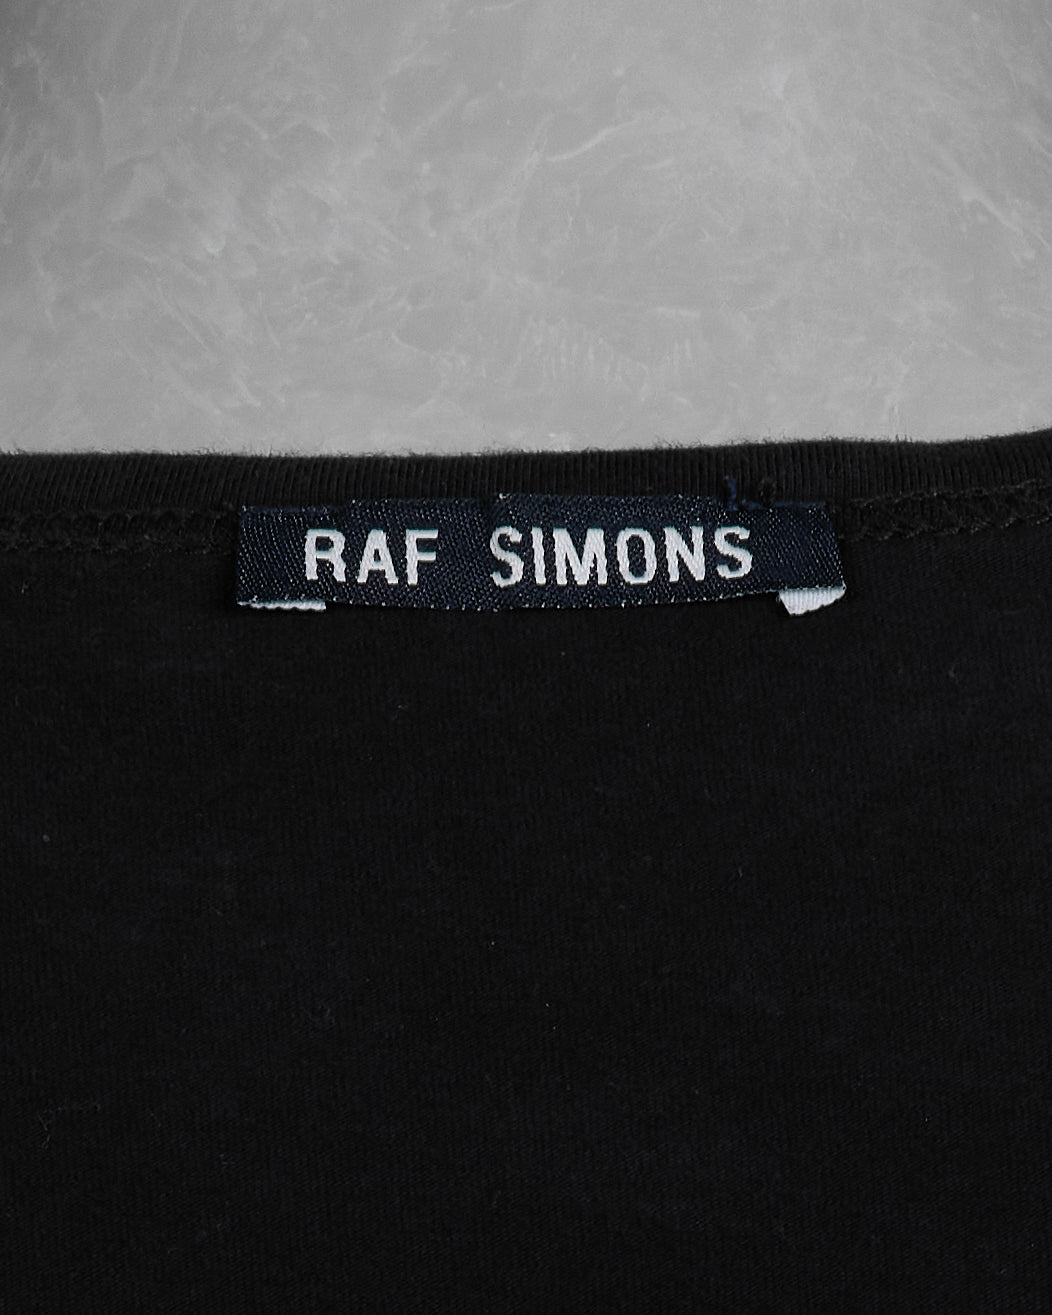 Raf Simons "Eater" Tank Top tag